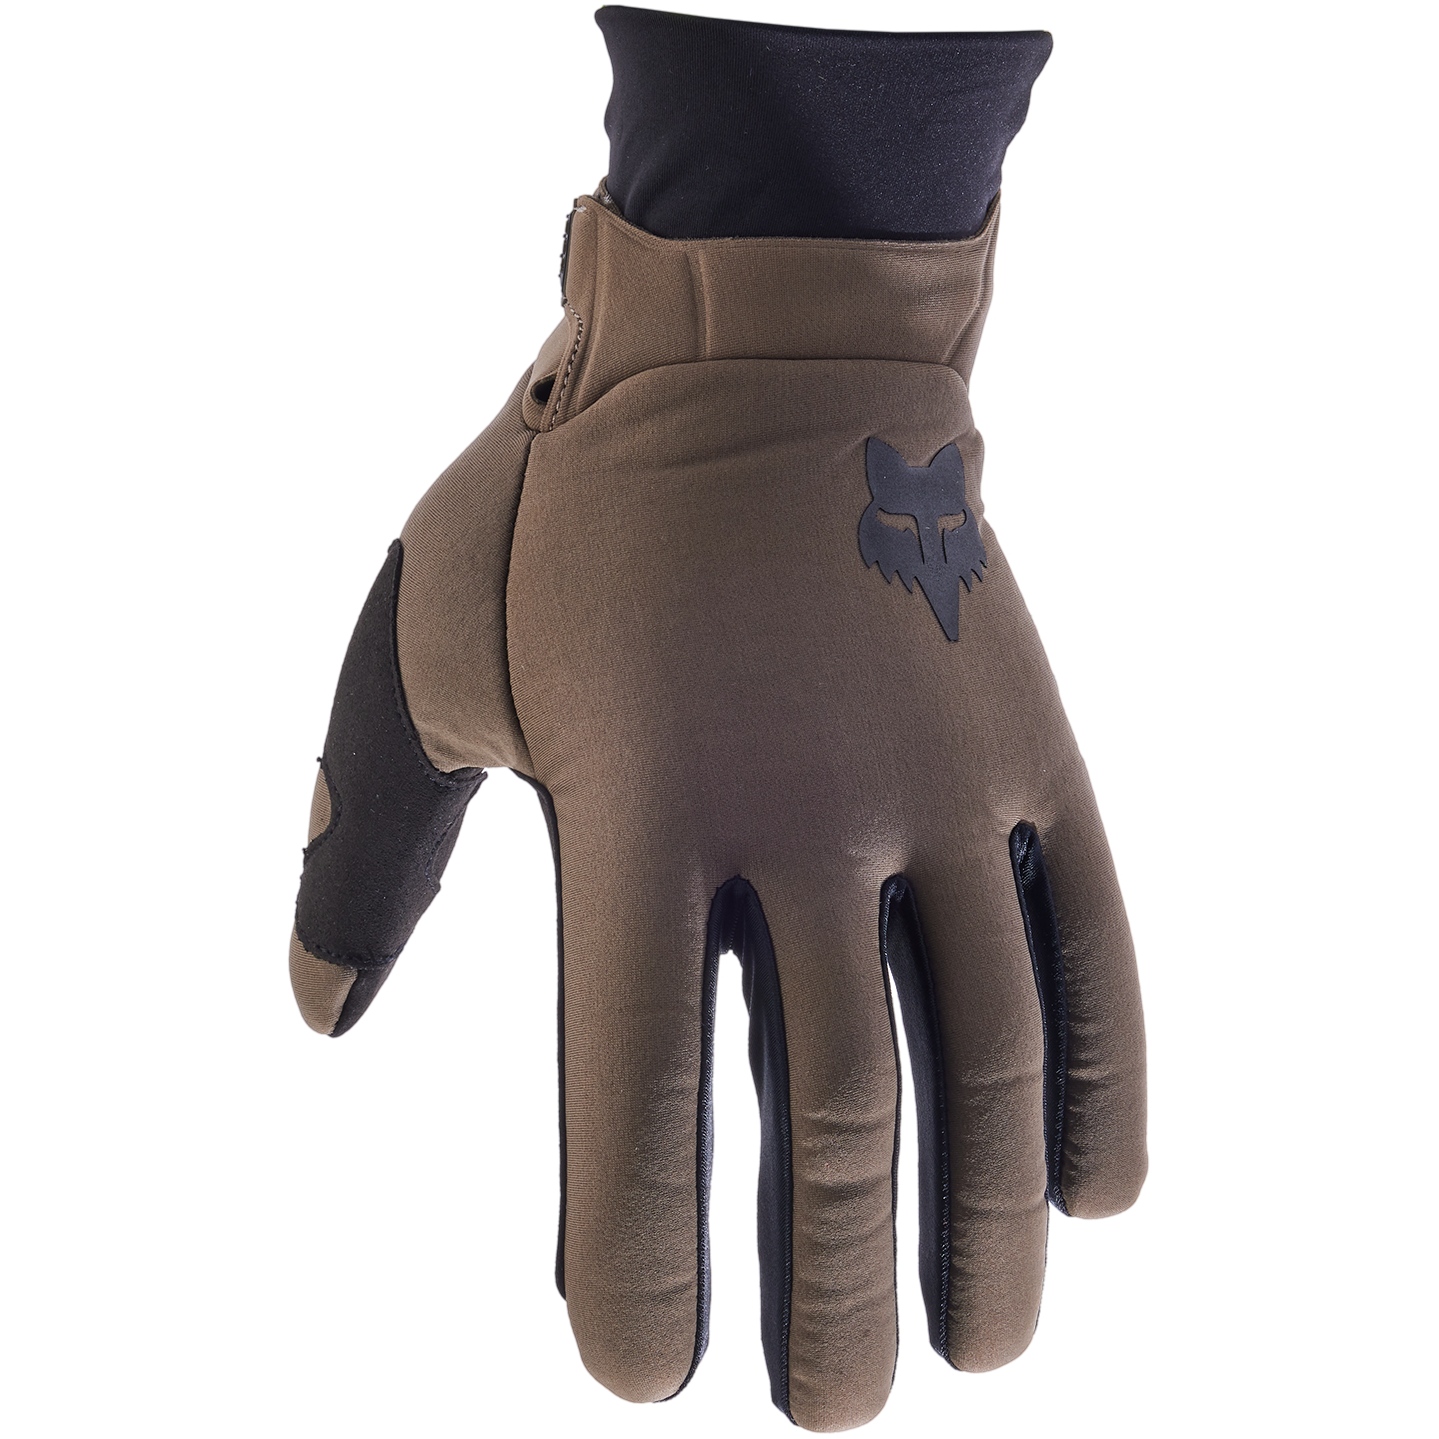 Productfoto van FOX Defend Thermo MTB Handschoenen Heren - dirt